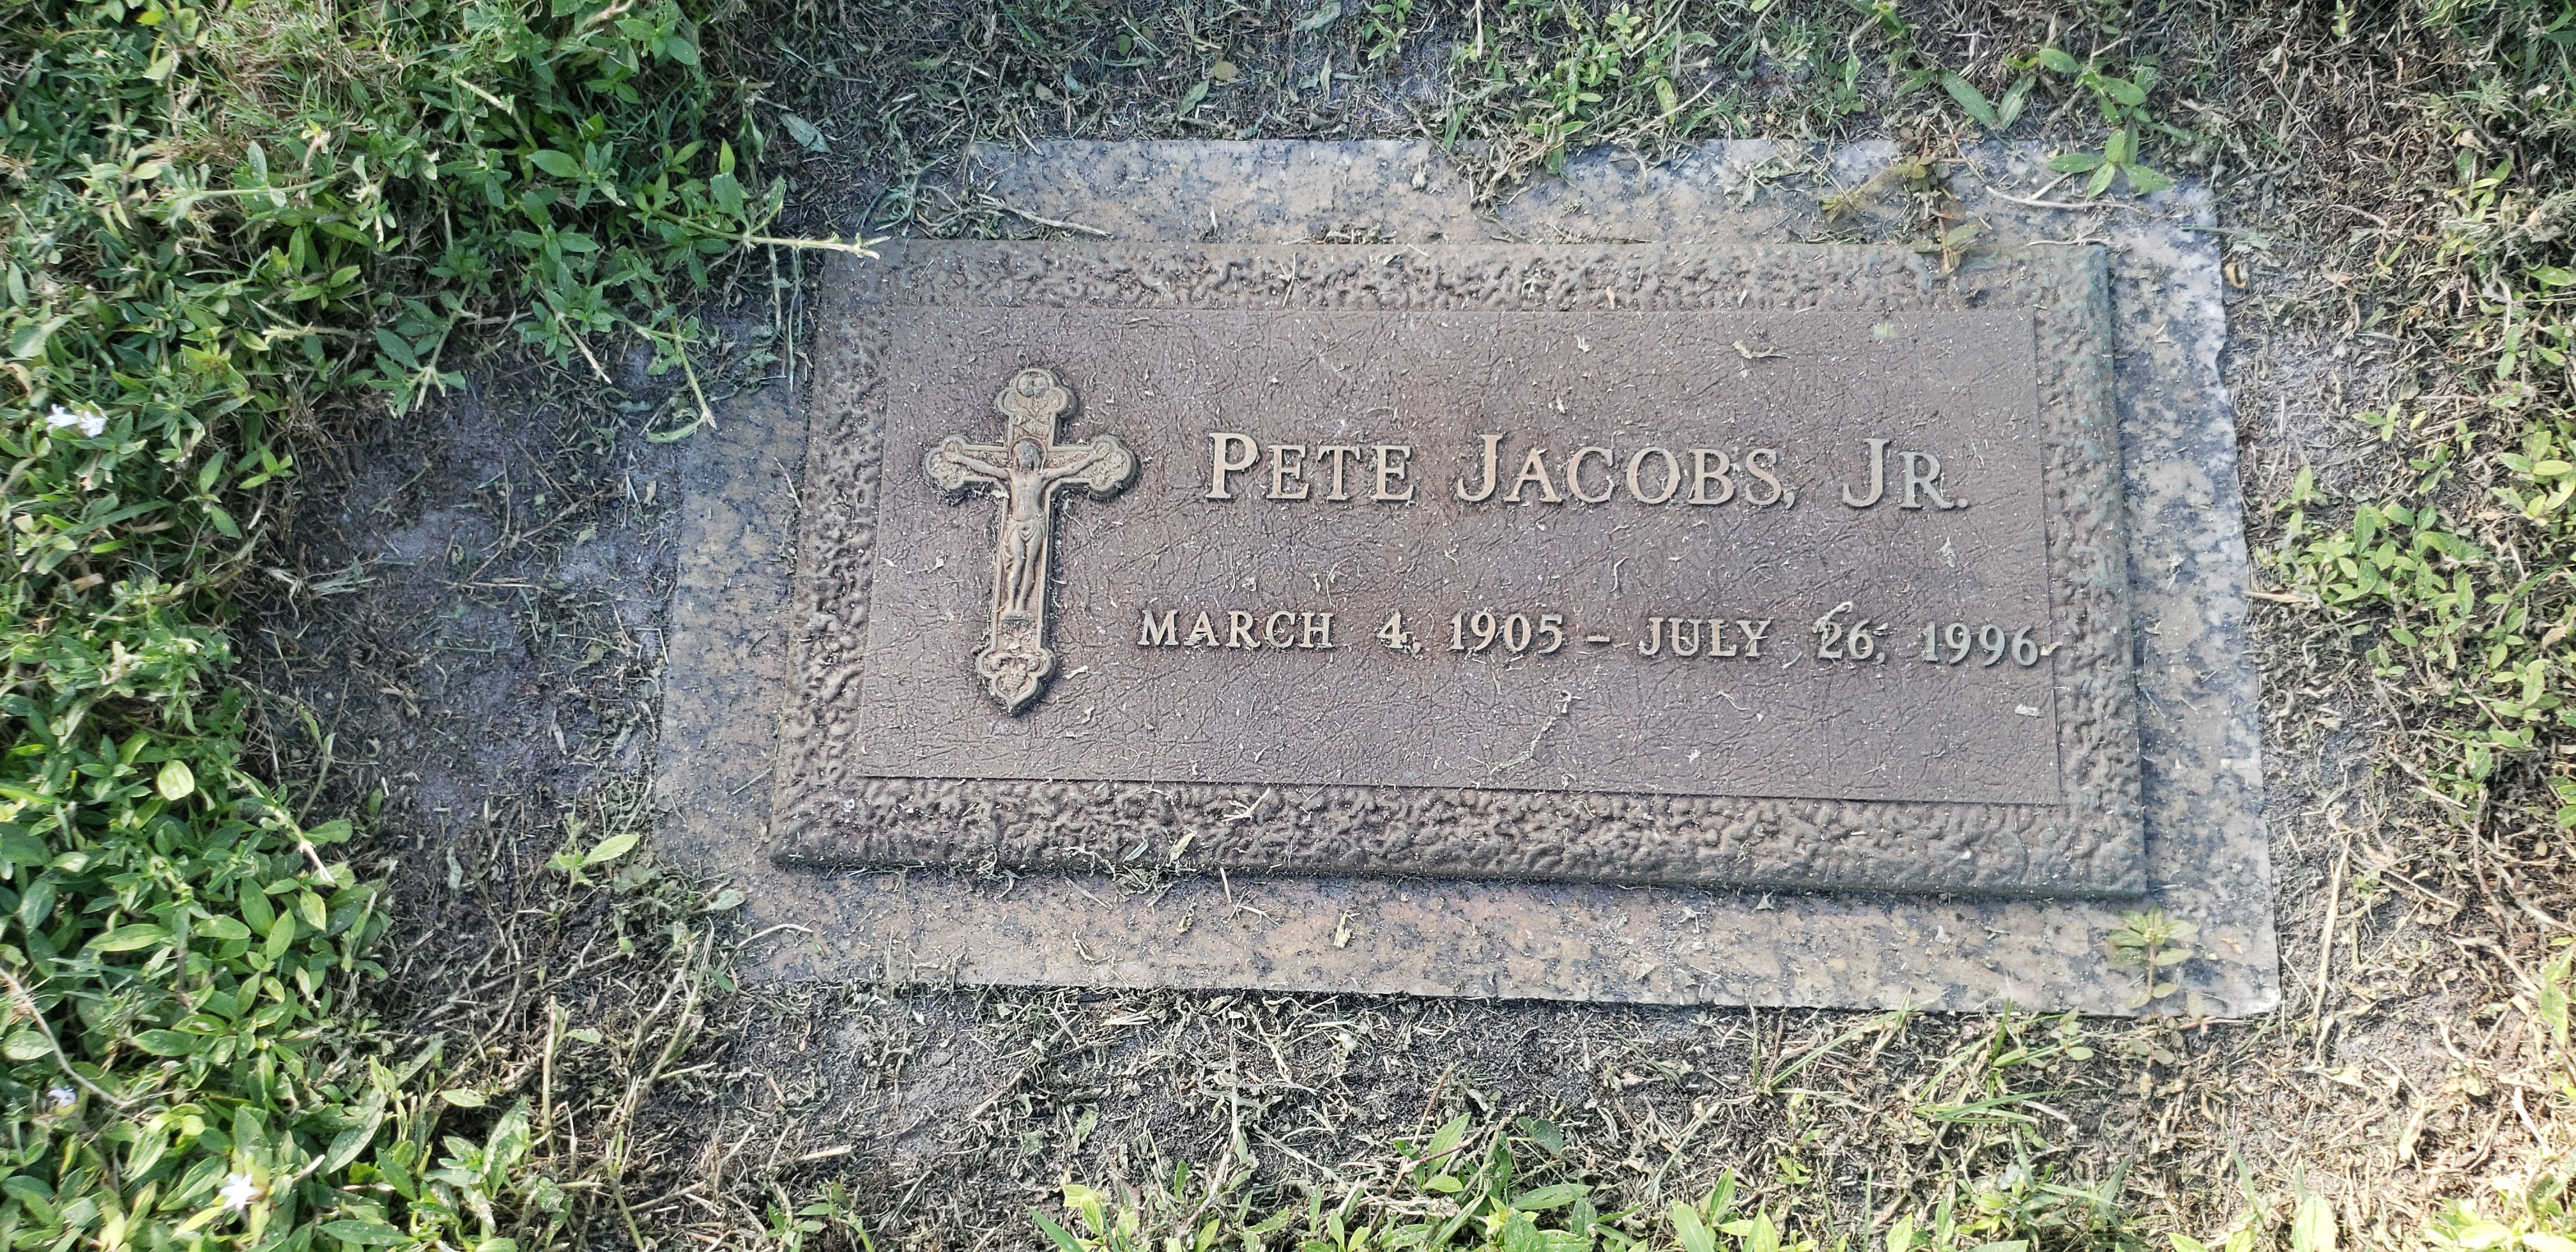 Pete Jacobs, Jr